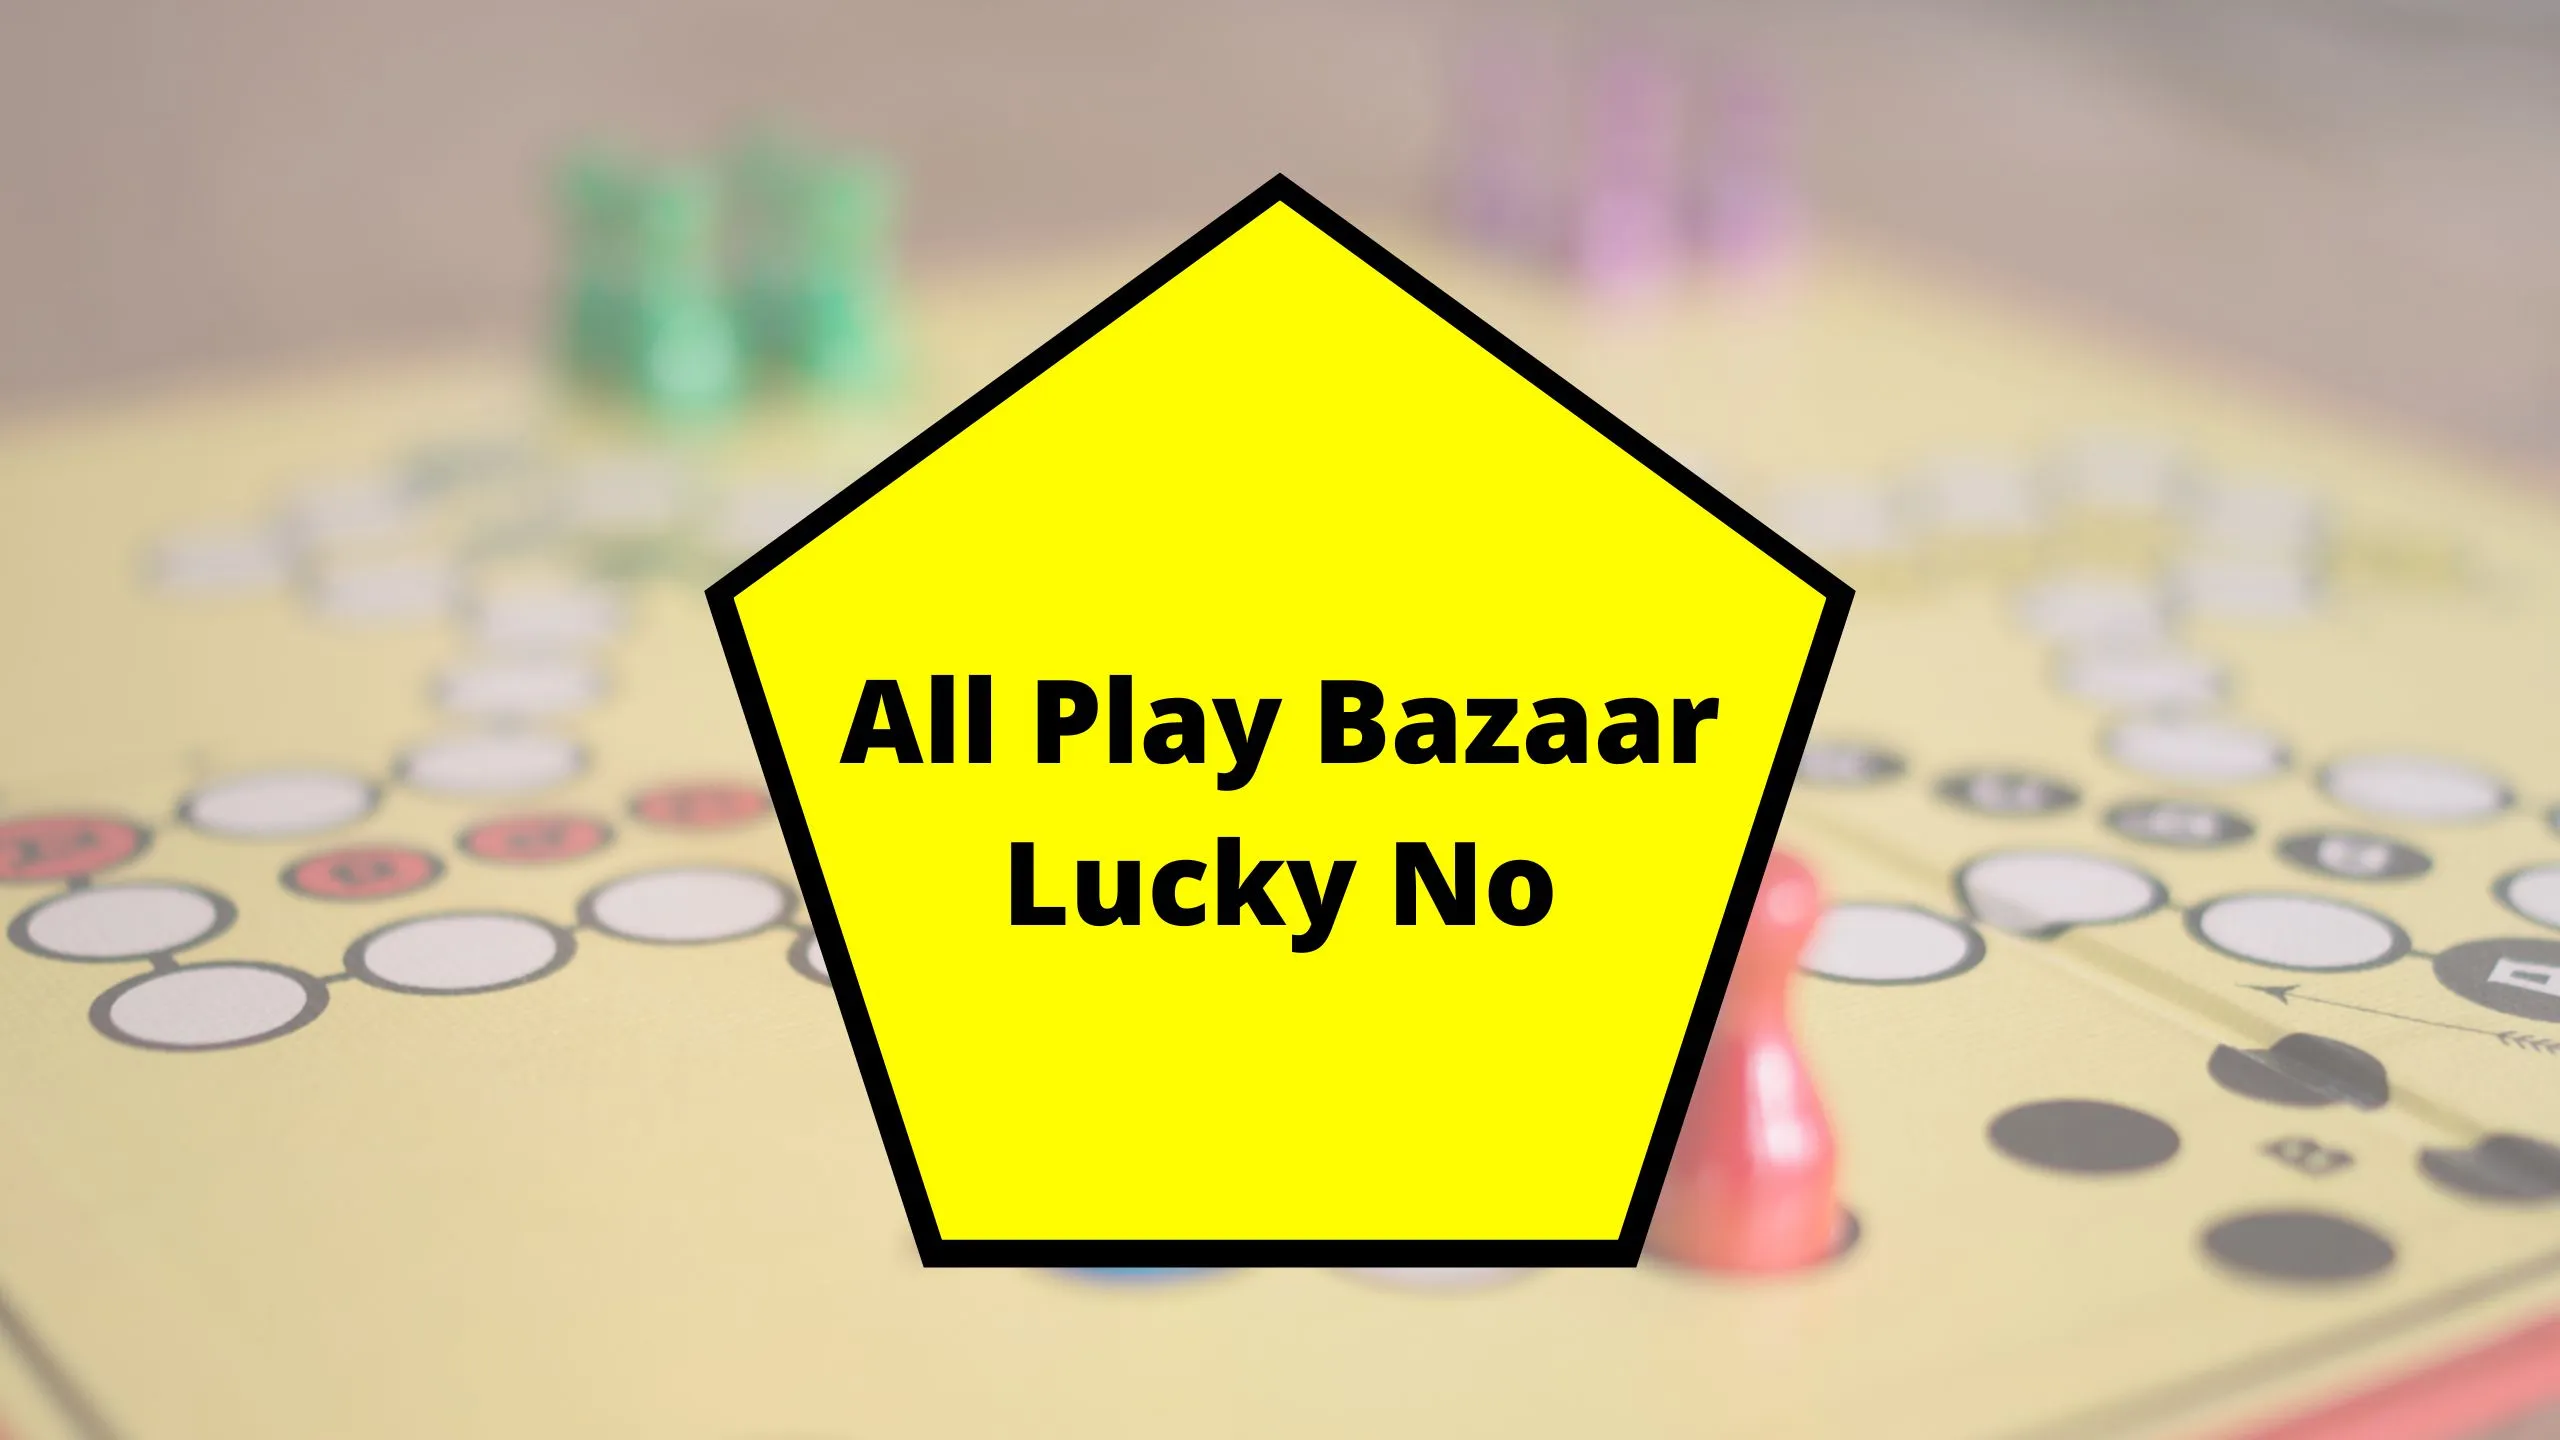 All Play Bazaar Lucky No